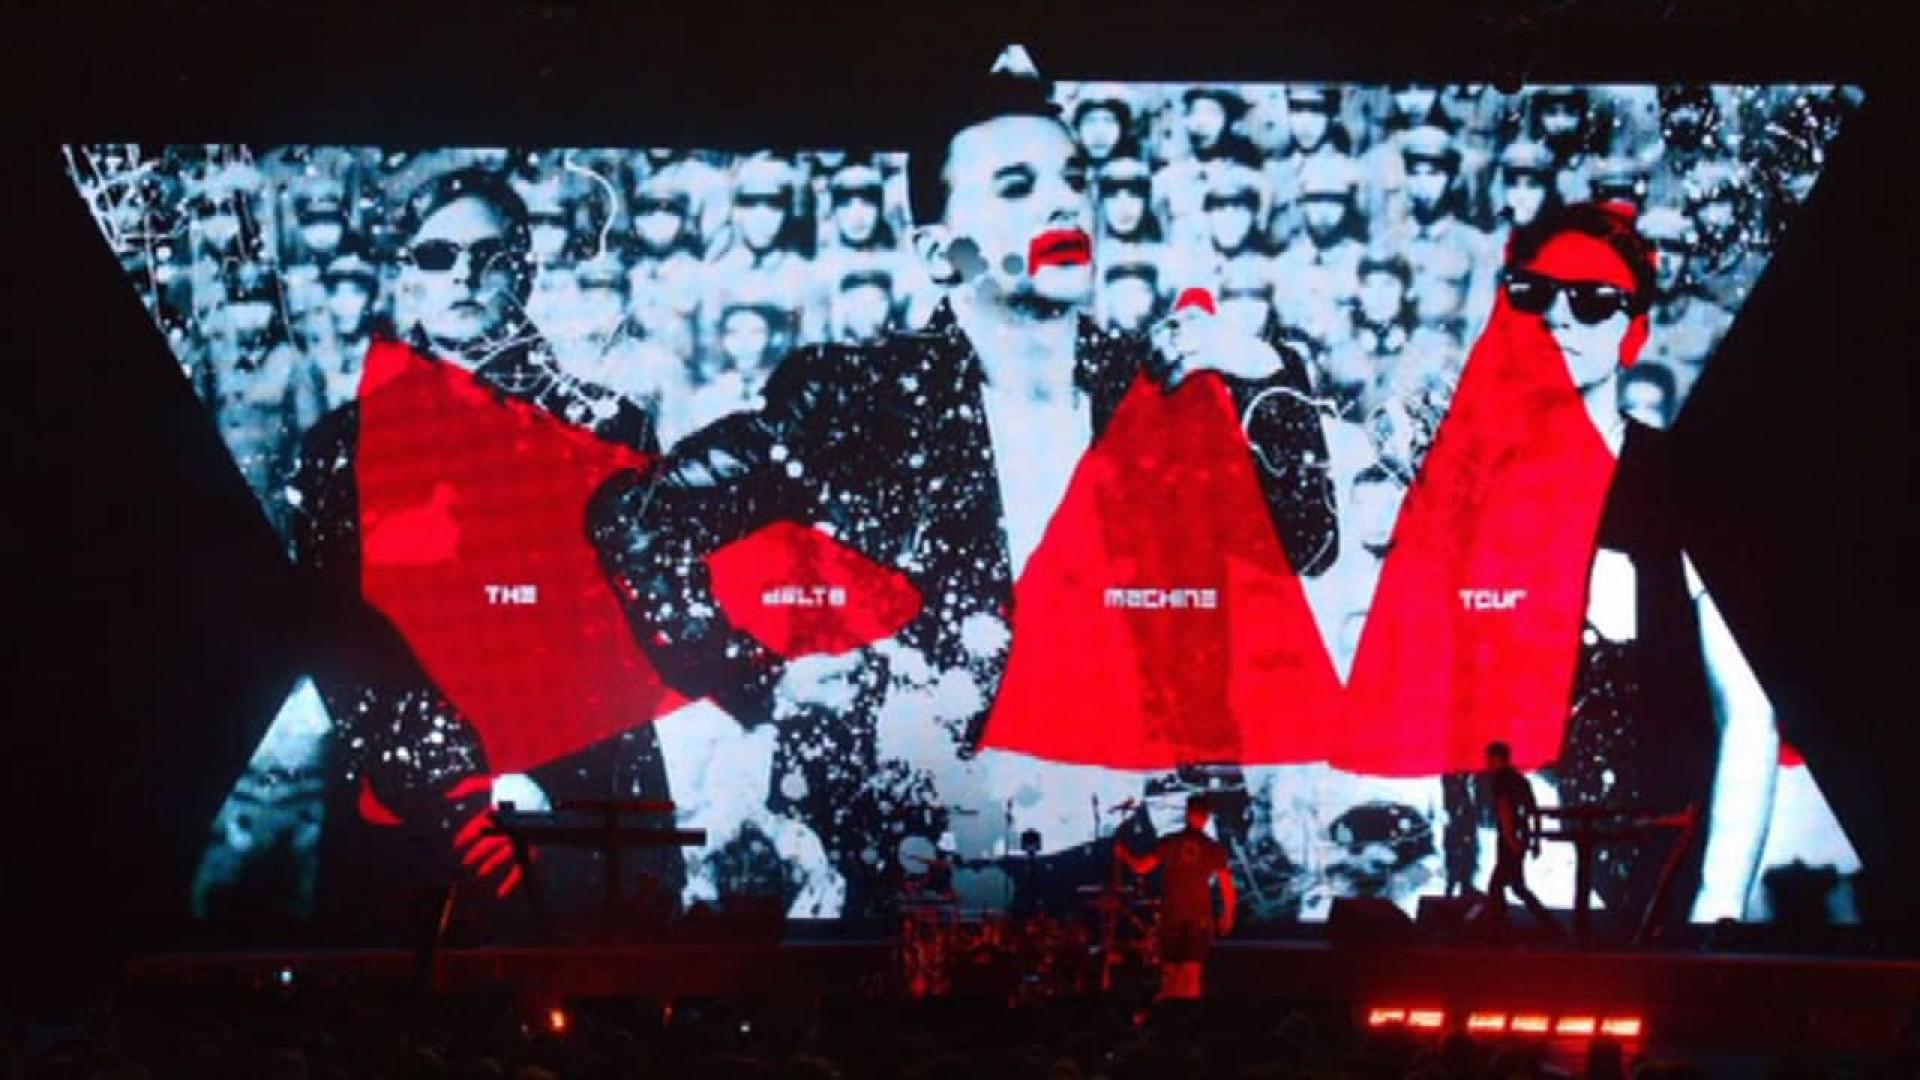 Depeche Mode: Live in Berlin